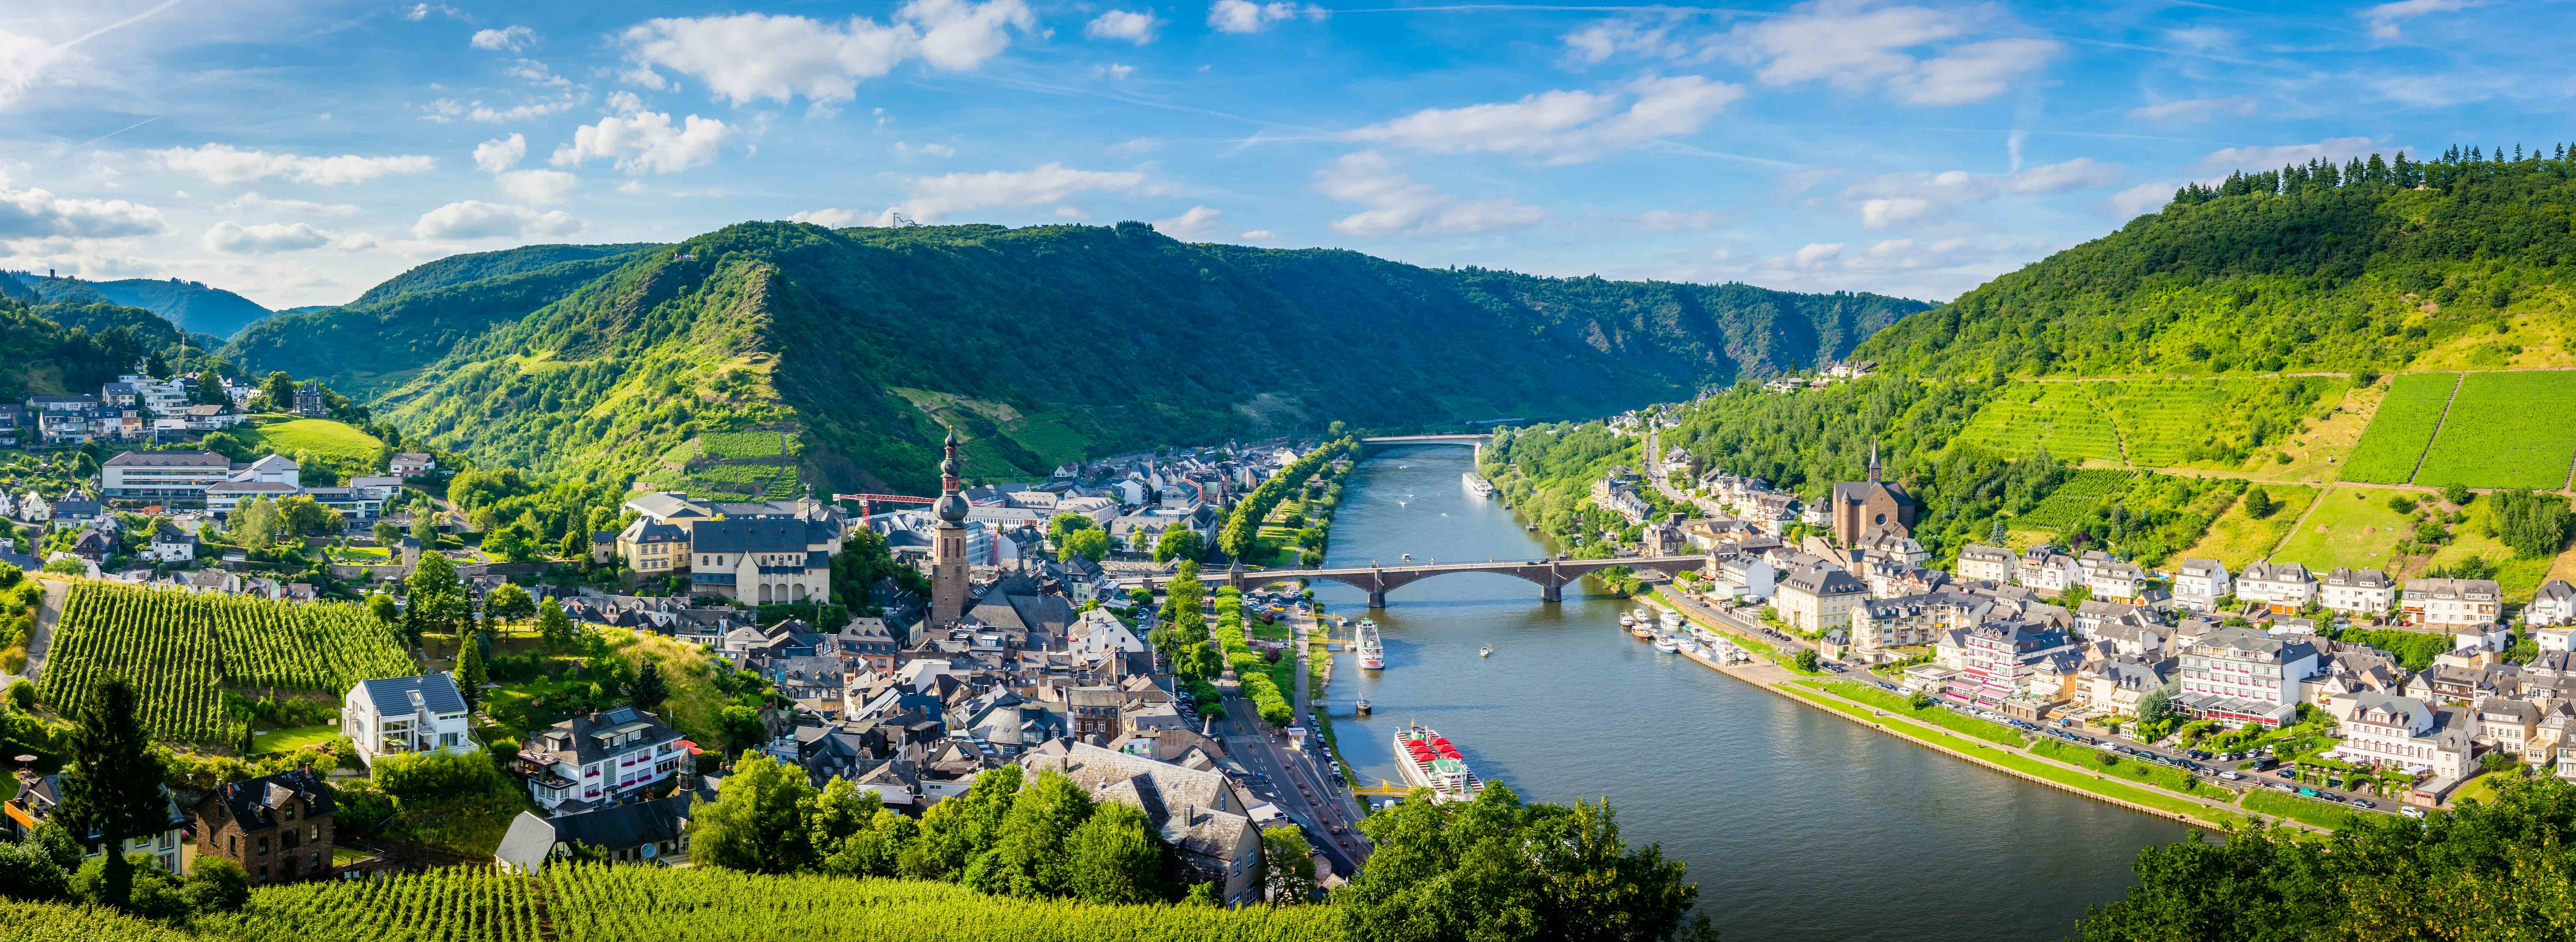 Moselle (rivière)